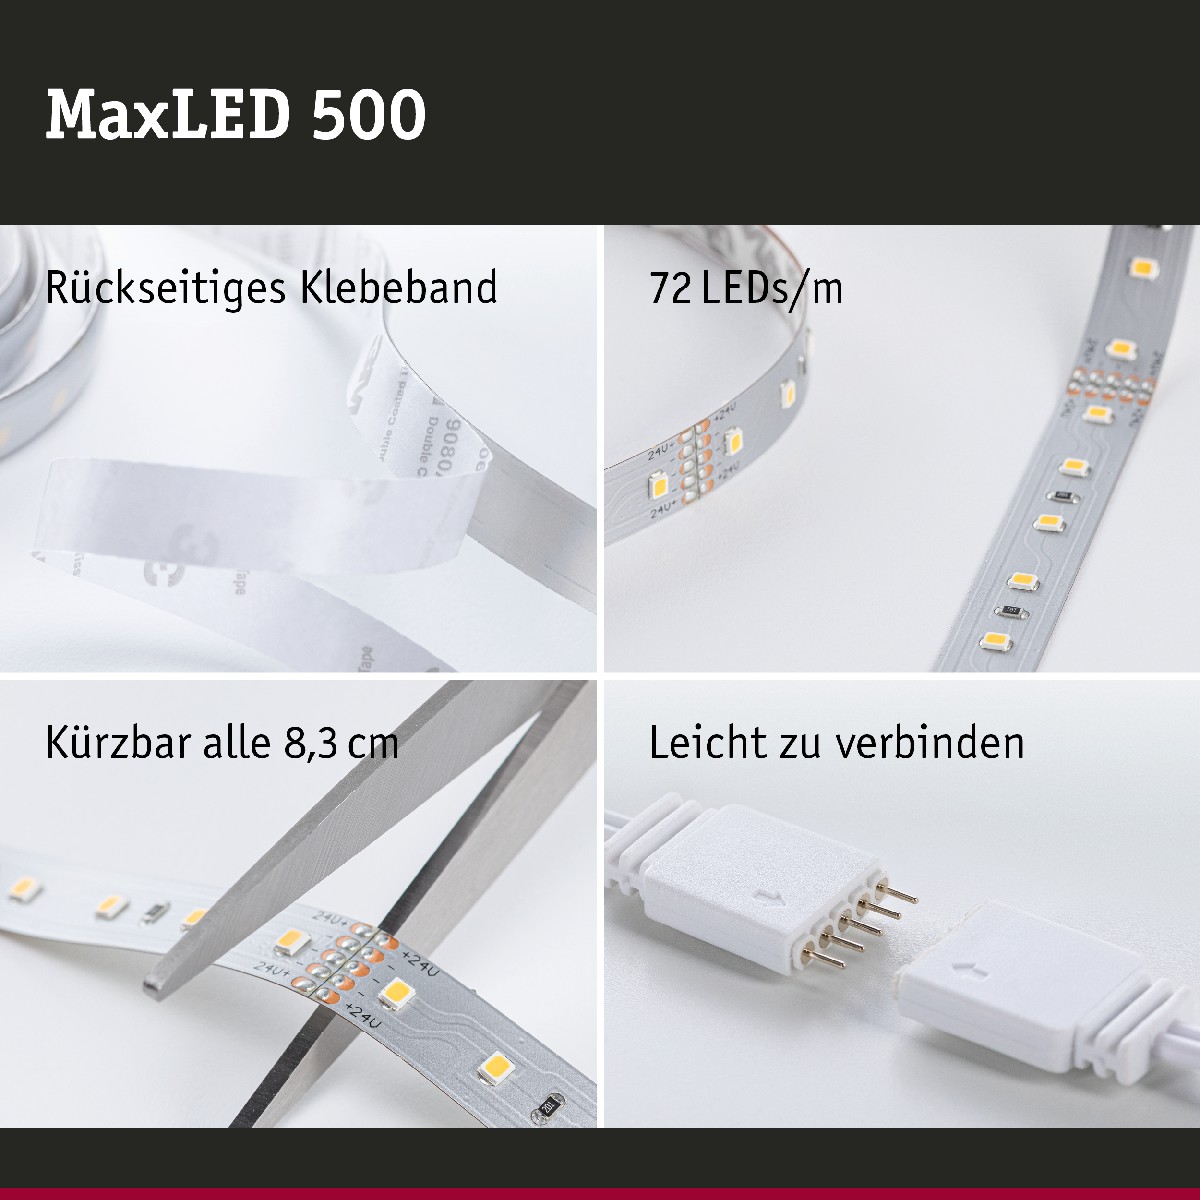 Smart Paulmann Strip LED MaxLED 500 Home 70907 Basisset